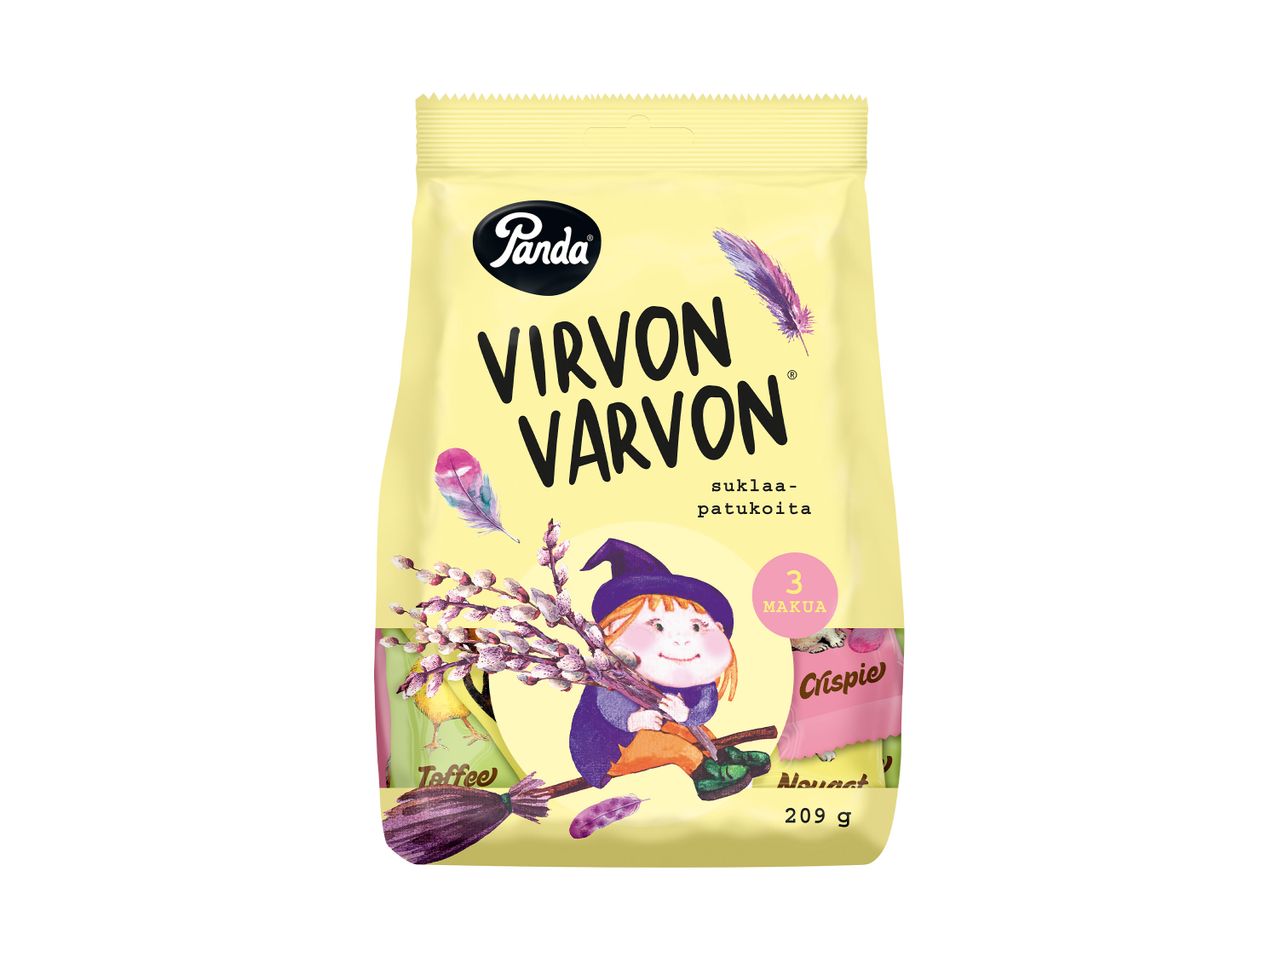 Mene koko näytön tilaan: Panda Virvon Varvon -suklaapatukat - Kuva 1